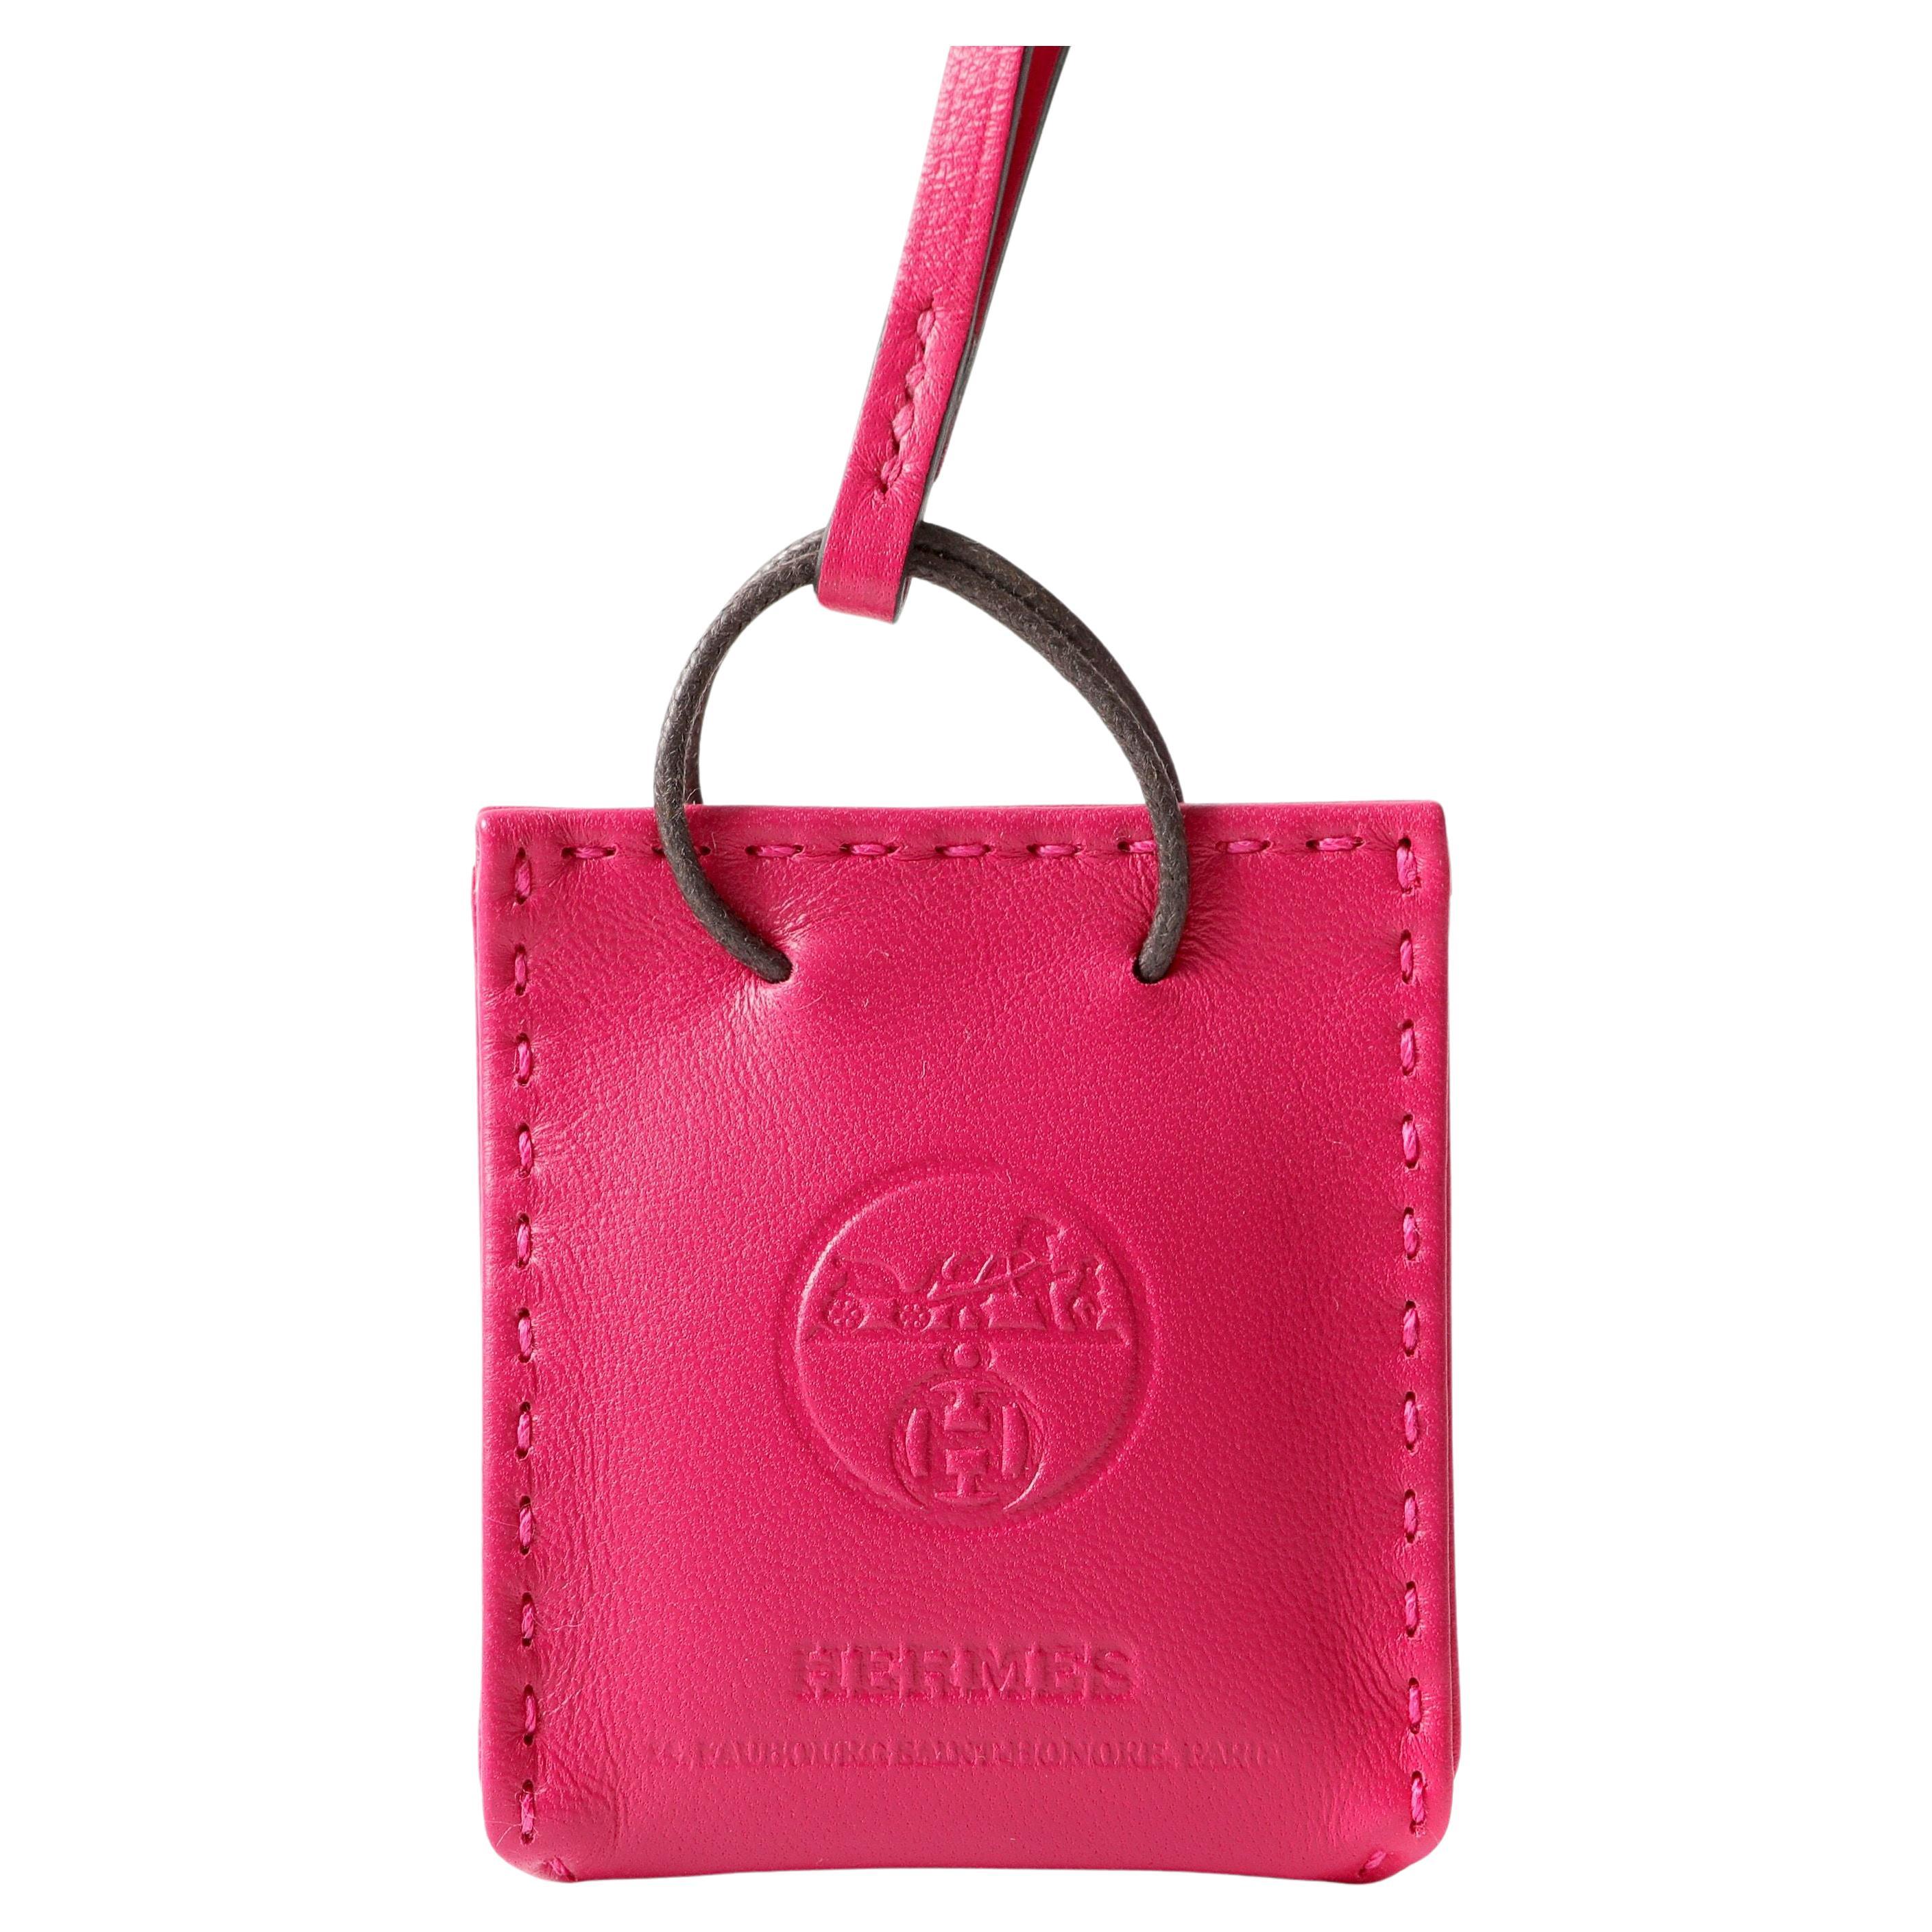 Hermès Pink Shopping Bag Charm